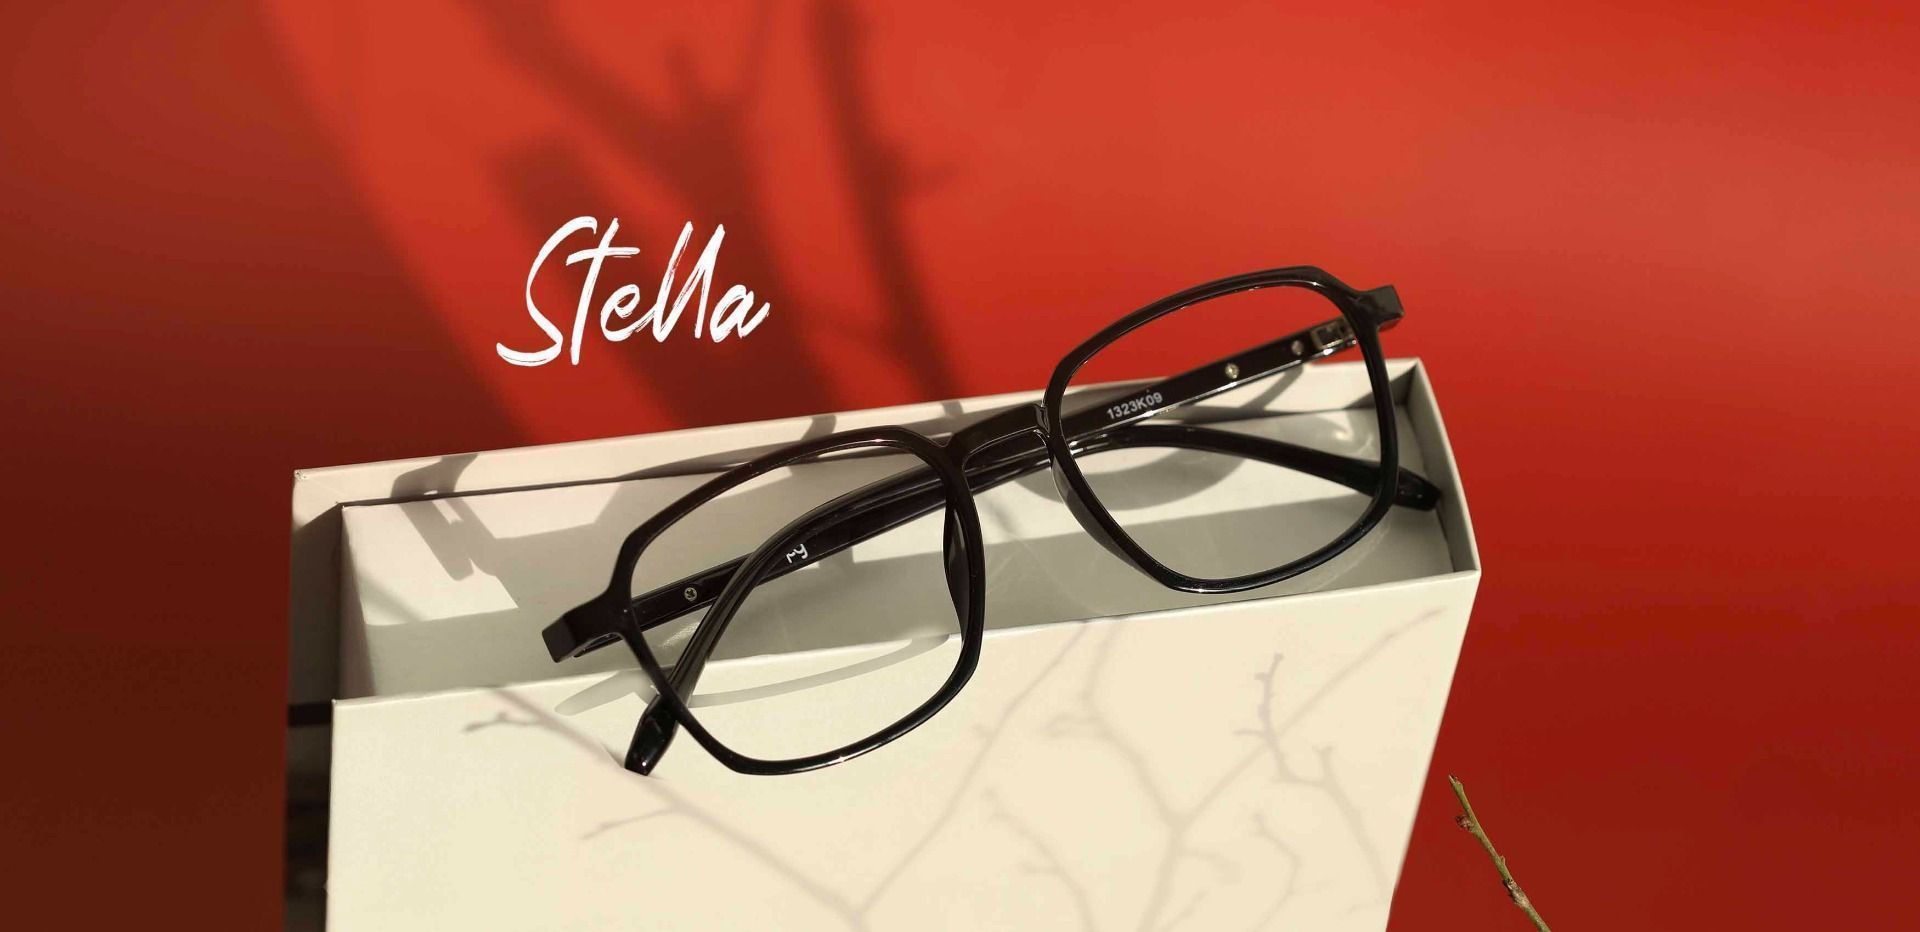 Stella Square Prescription Glasses - Black